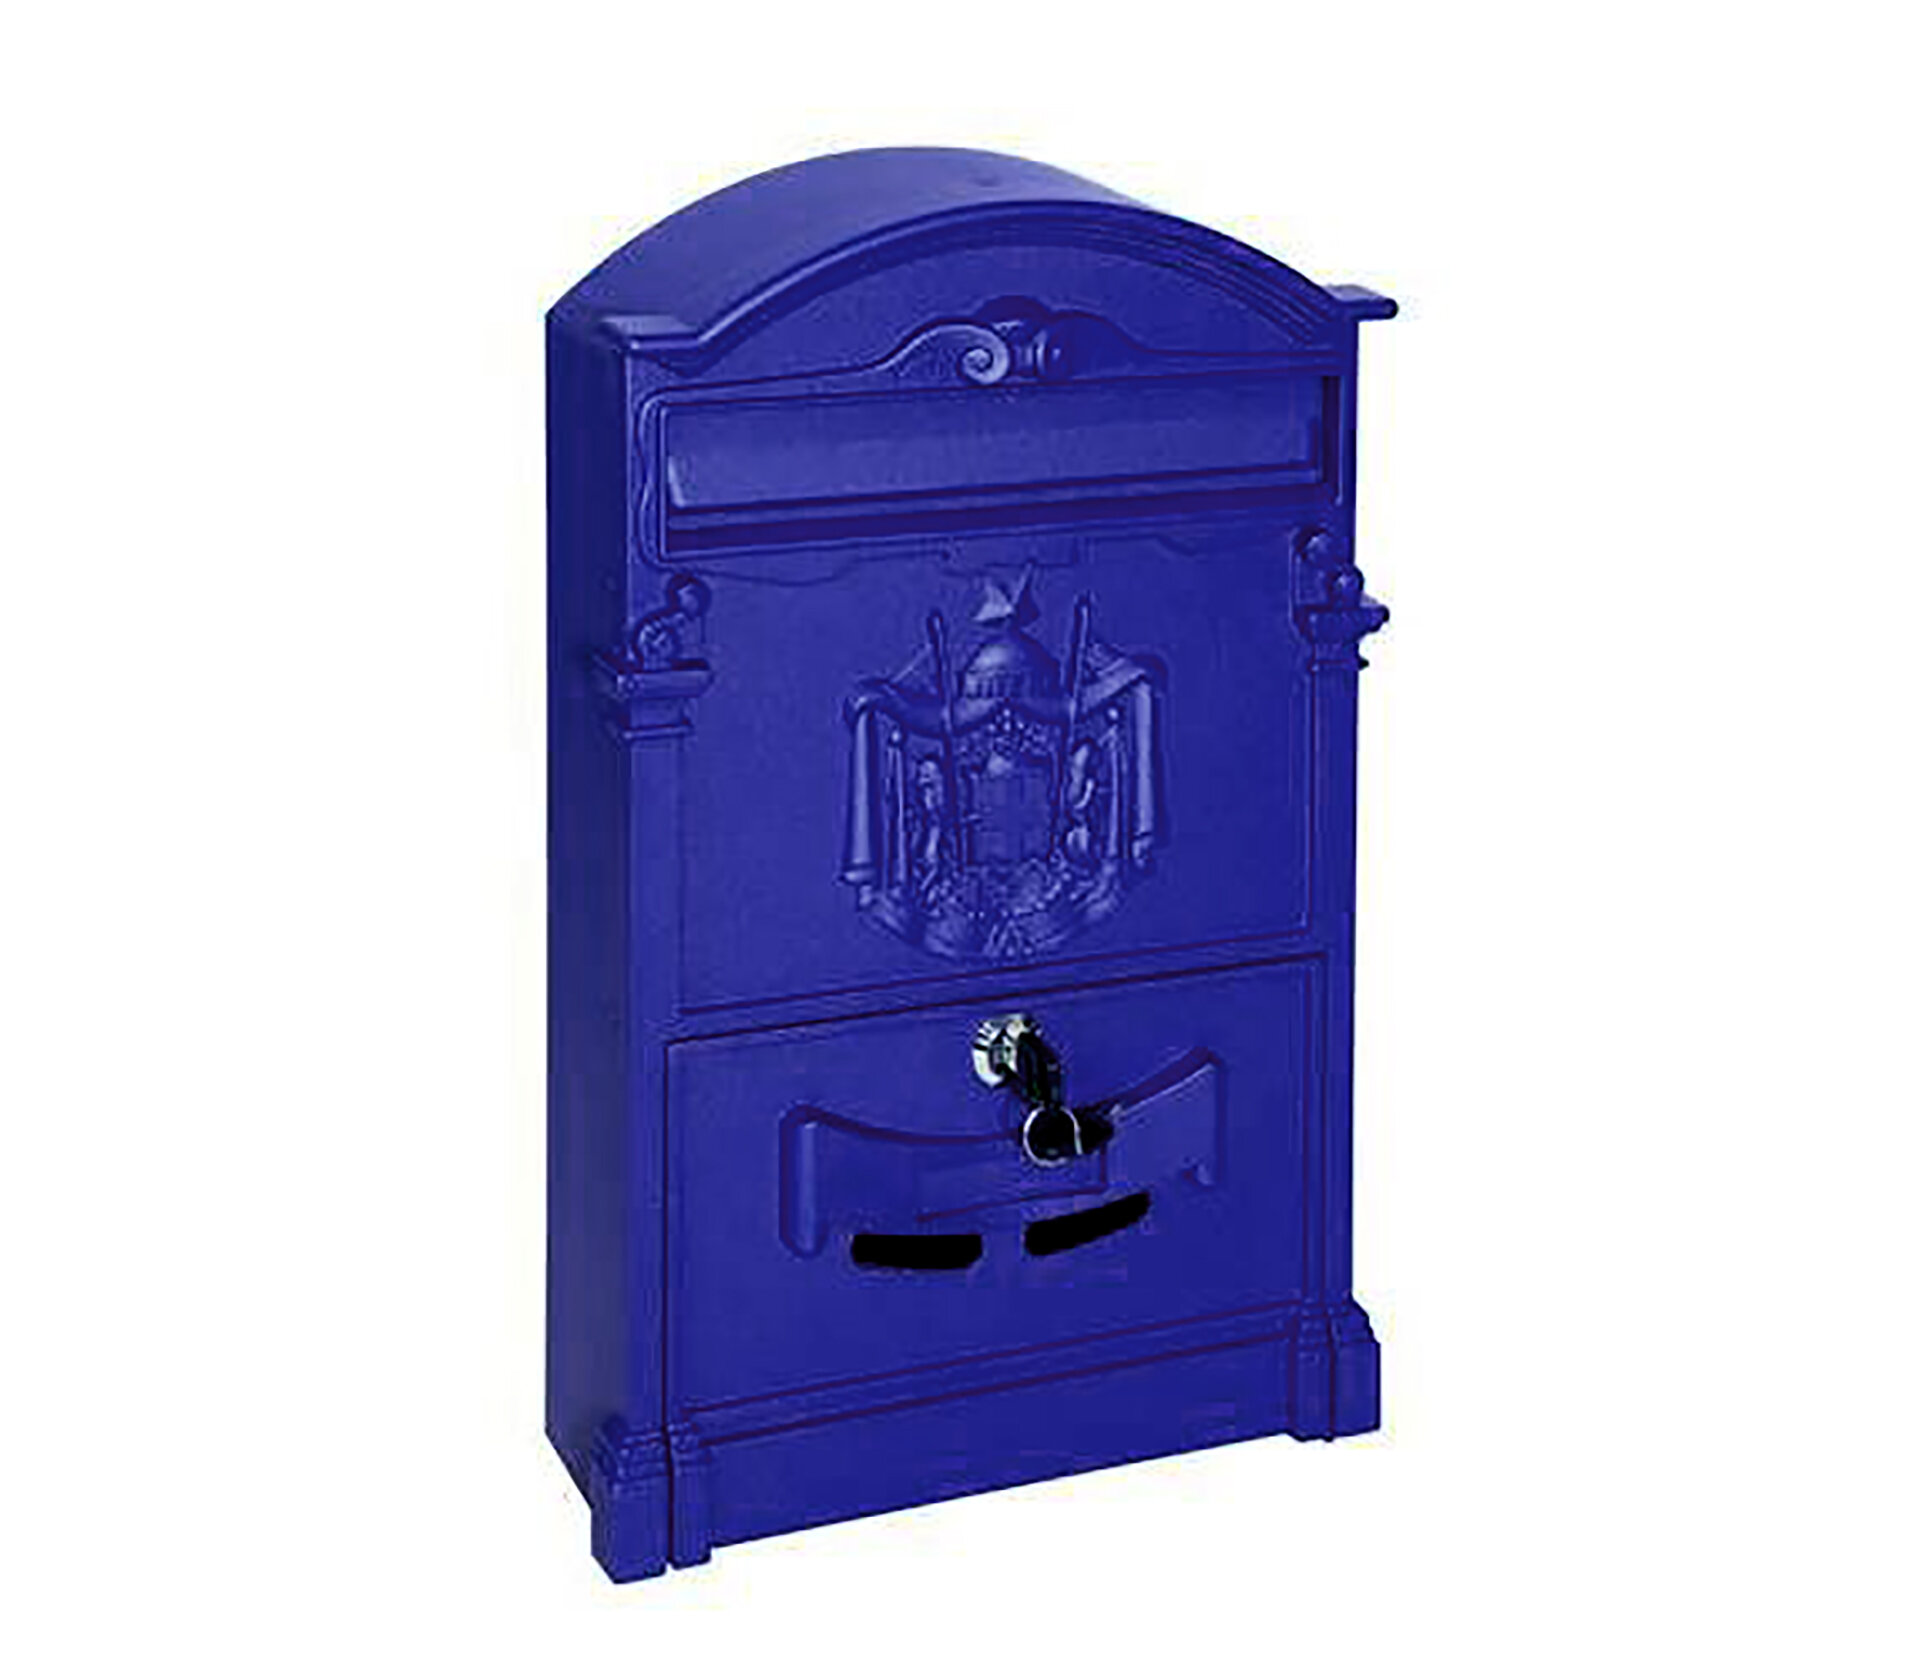 Почтовый ящик уличный металлический цвет синий. Ящик для почты с дизайном под старину с гербом.